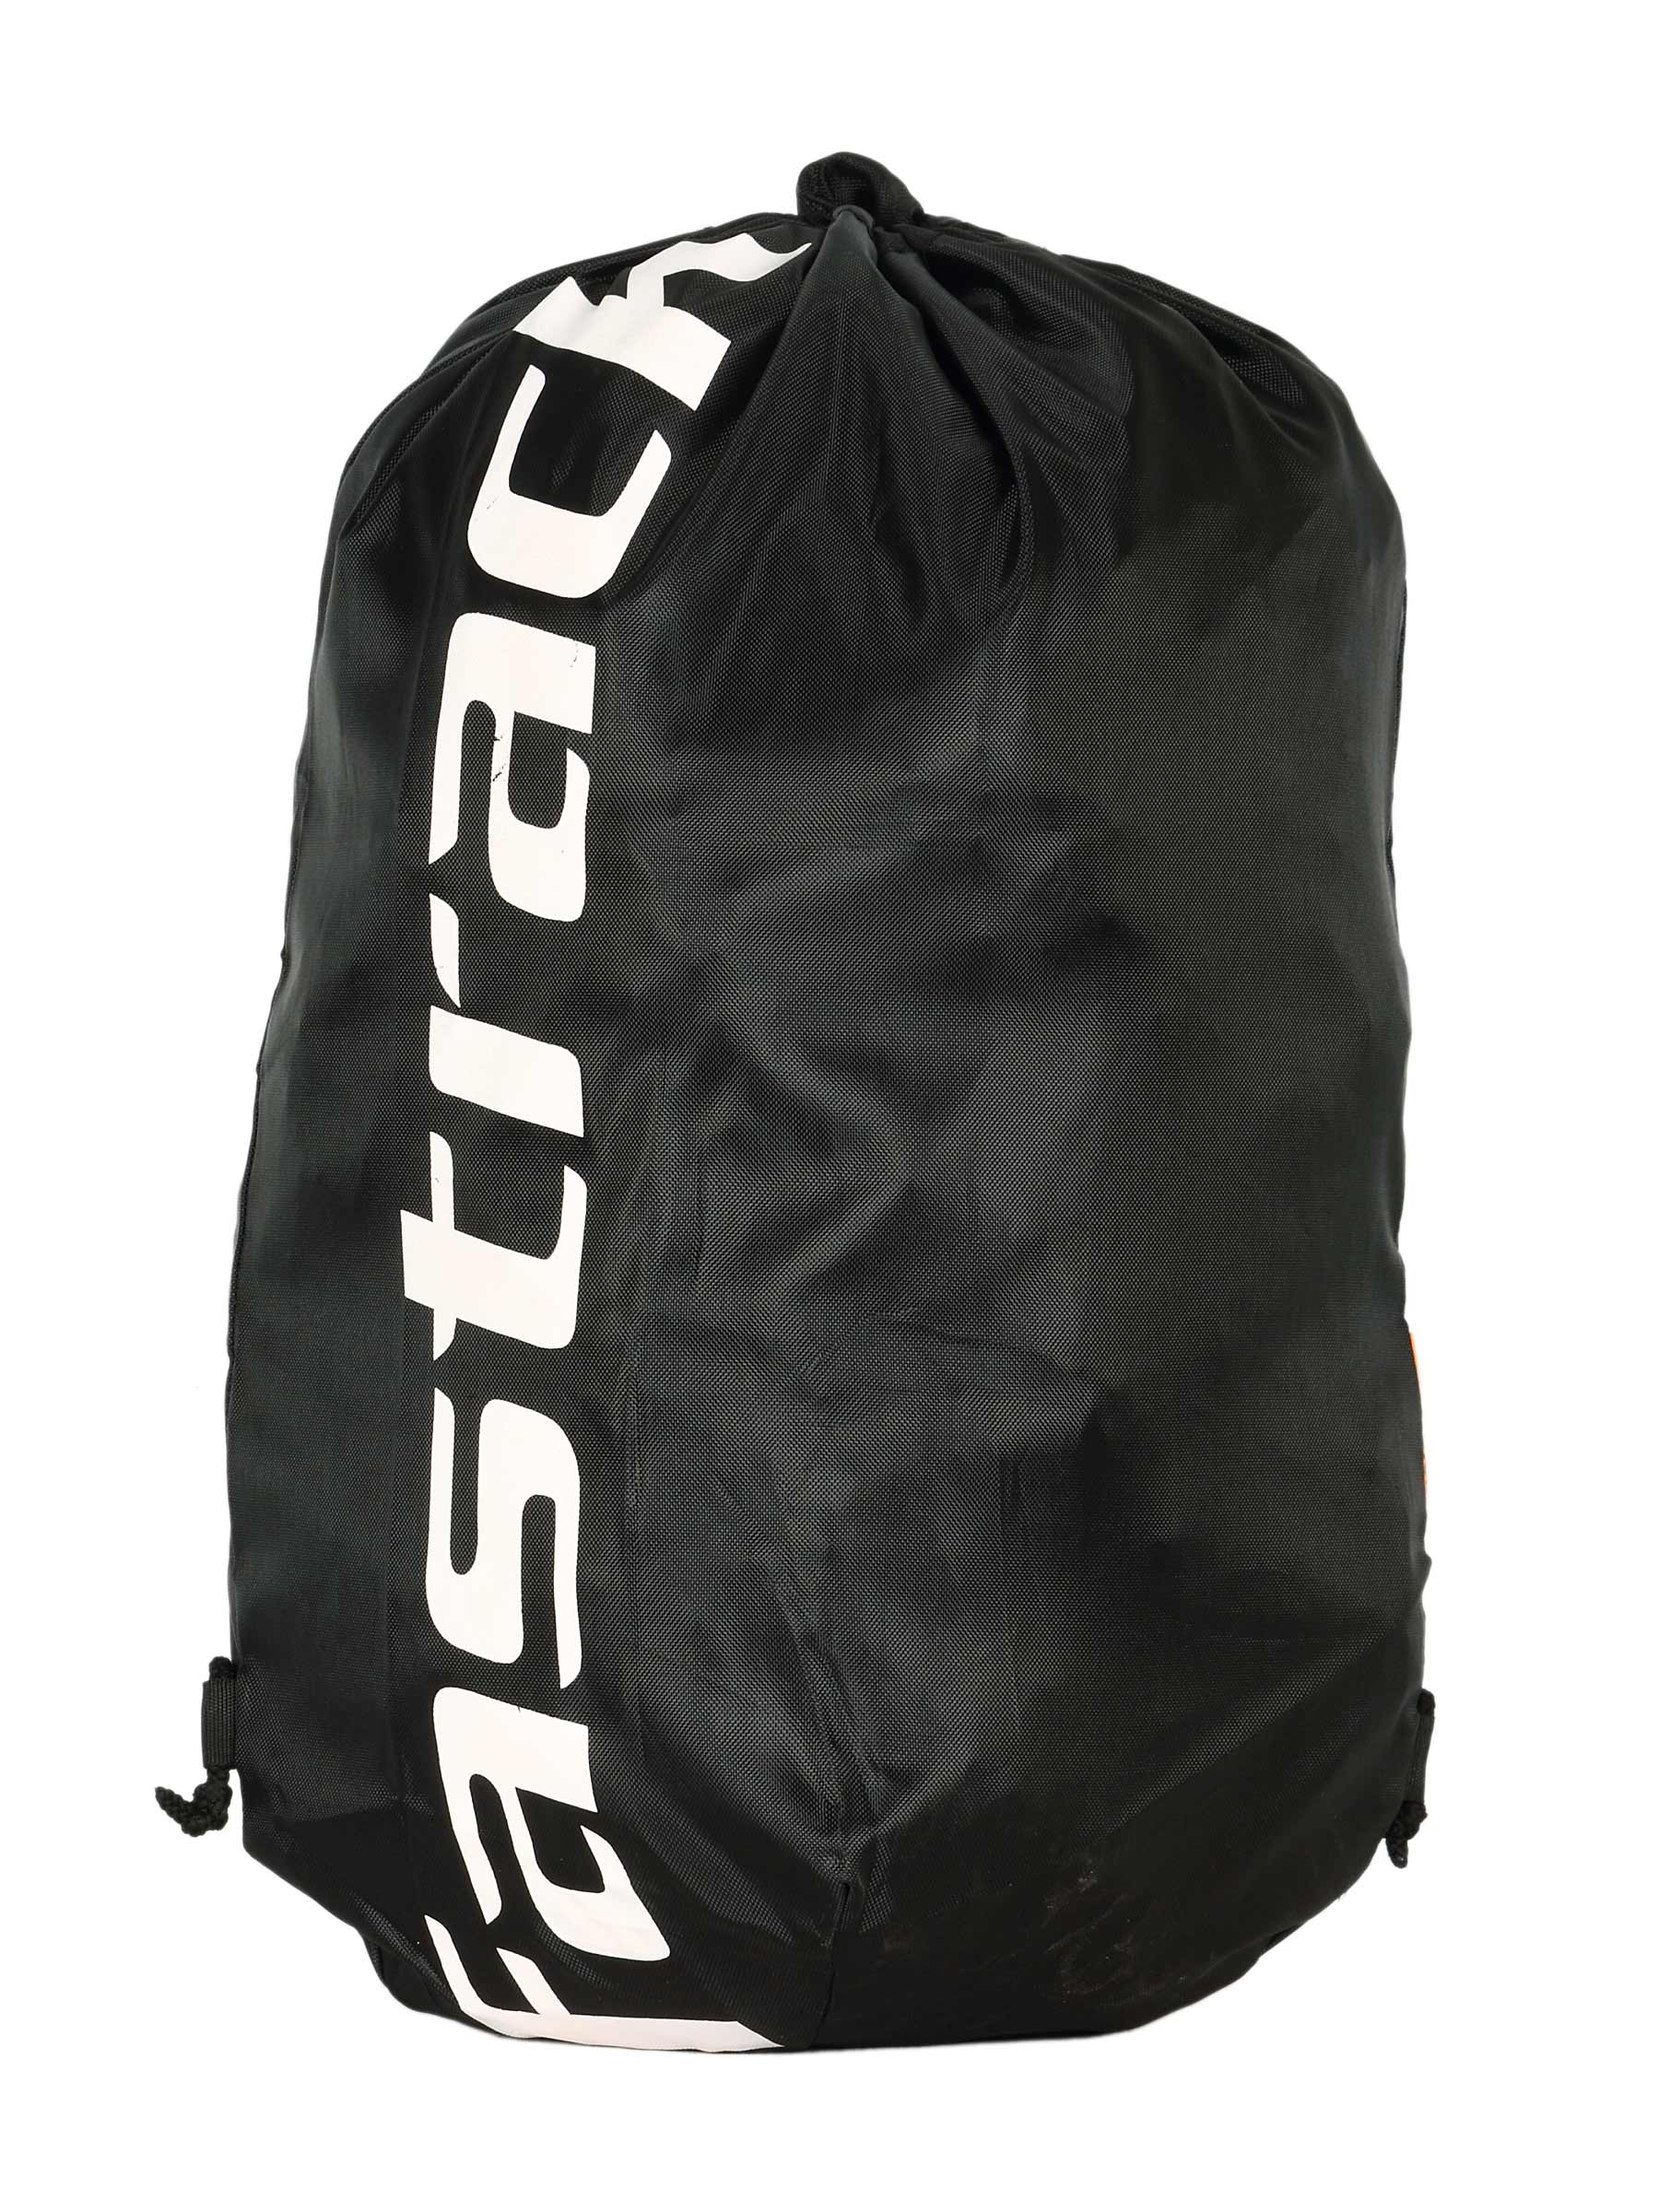 Fastrack Unisex Black White Printed Sling Bag